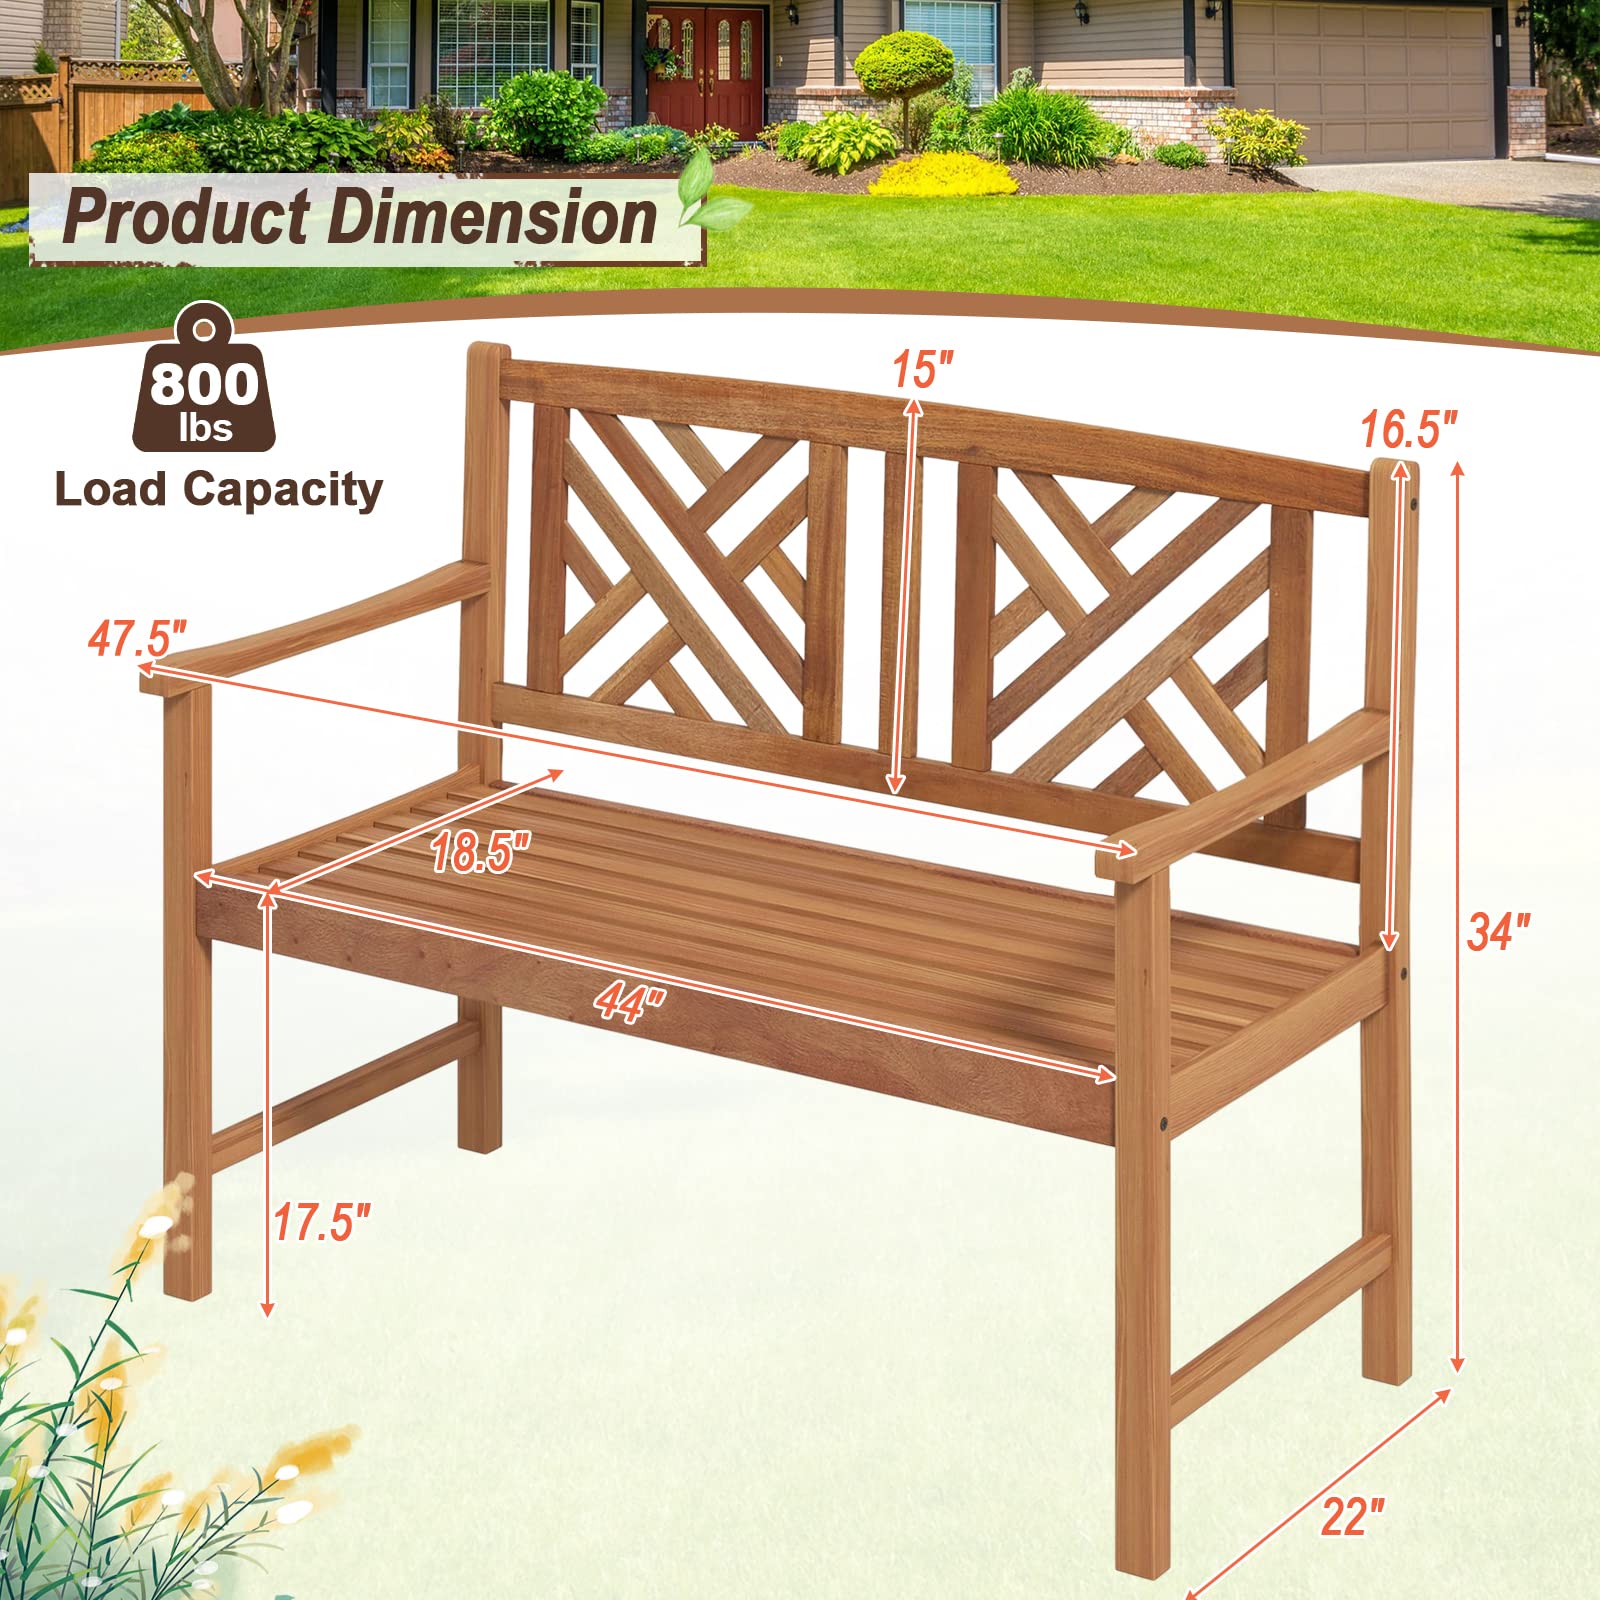 Giantex Outdoor Wooden Garden Bench - 2-Person Acacia Wood Bench, Front Porch Bench (Non-Foldable)